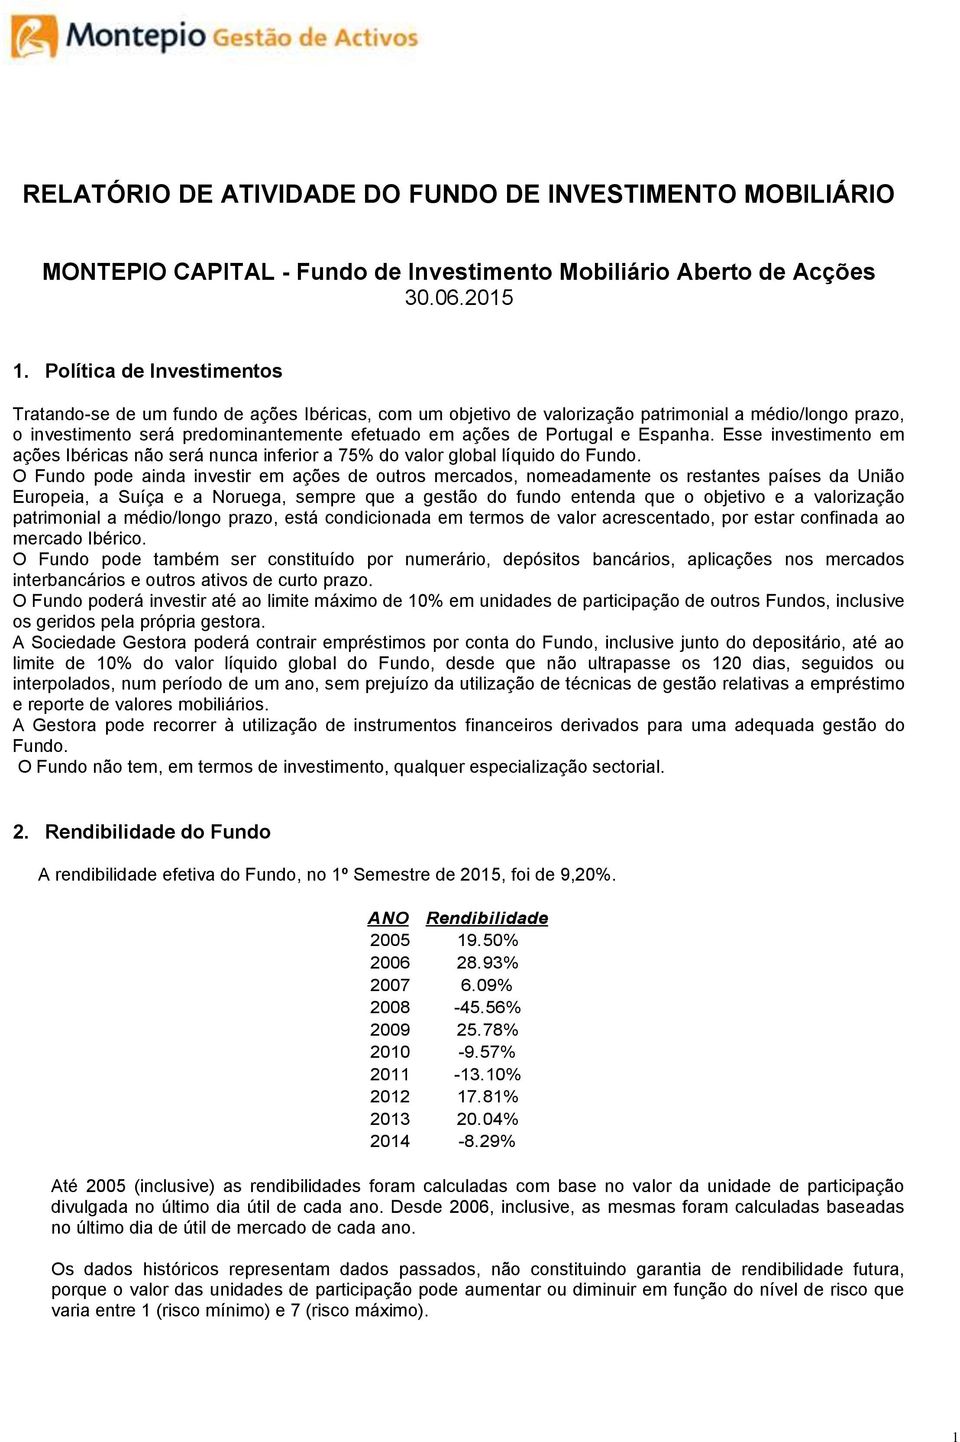 Portugal e Espanha. Esse investimento em ações Ibéricas não será nunca inferior a 75% do valor global líquido do Fundo.